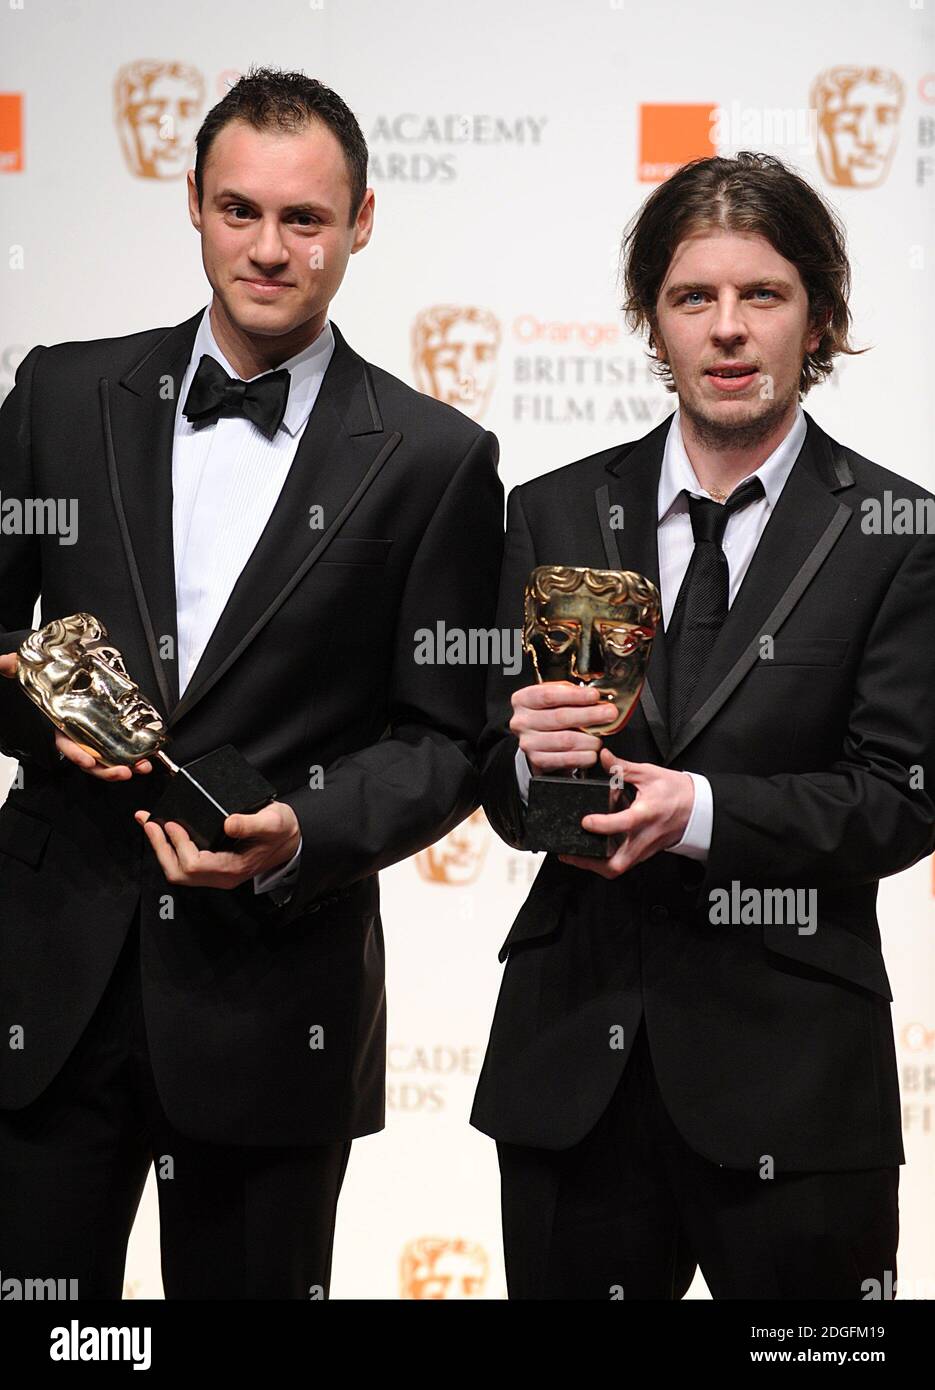 Poss Kondeatis (à gauche) et Paul Wright, lauréats du prix du meilleur court-métrage dans la salle de presse des Orange British Academy film Awards 2011, The Royal Opera House, Covent Garden, Londres. Banque D'Images